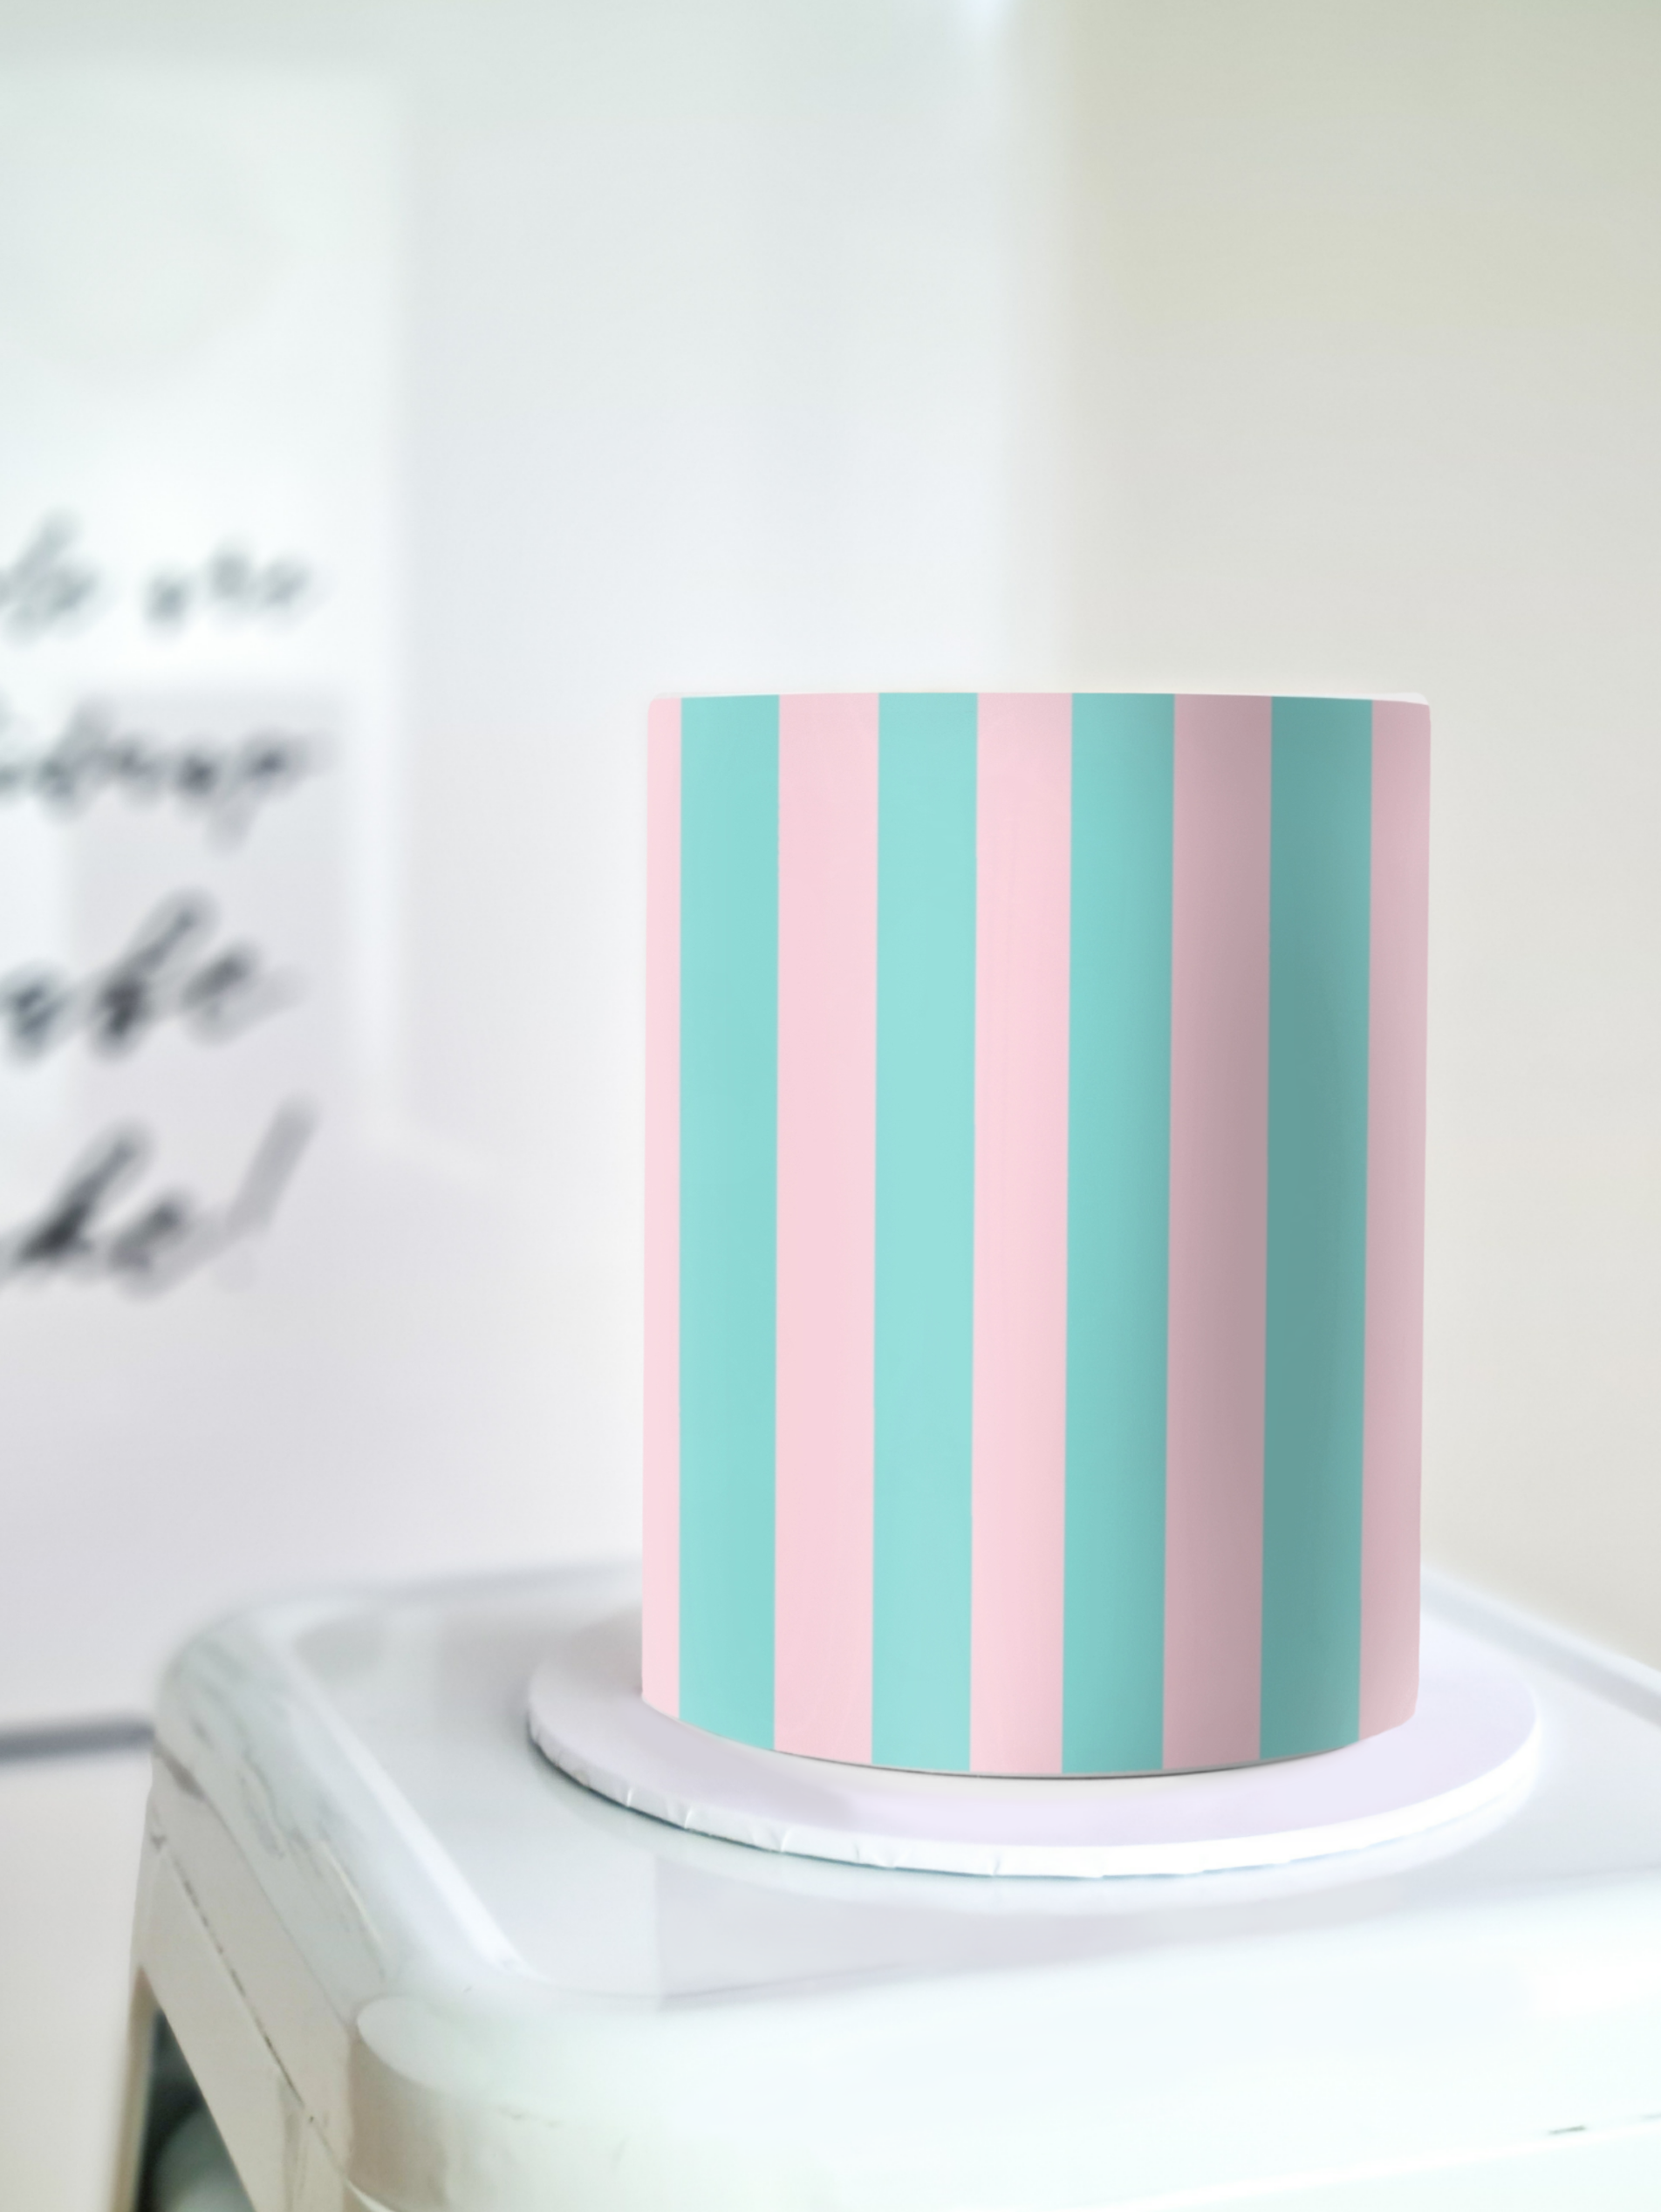 Ken striped cake wrap